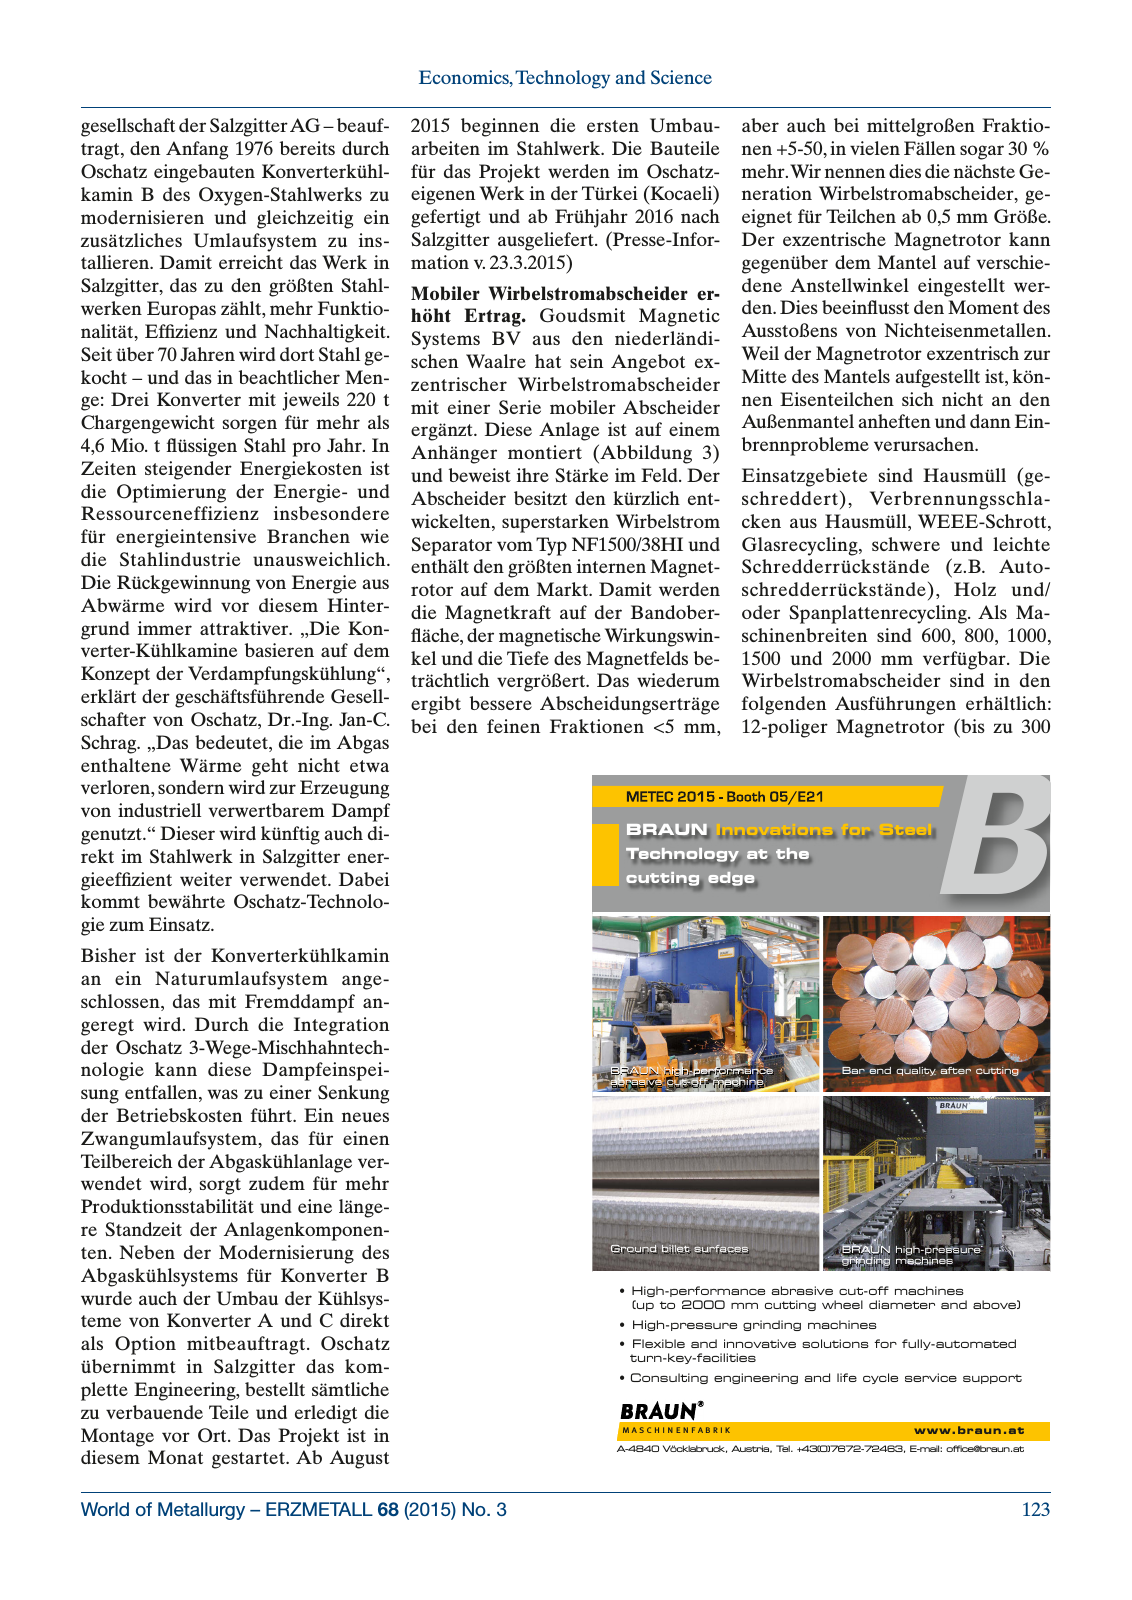 Vorschau World of Metallurgy 3/2015 Seite 17